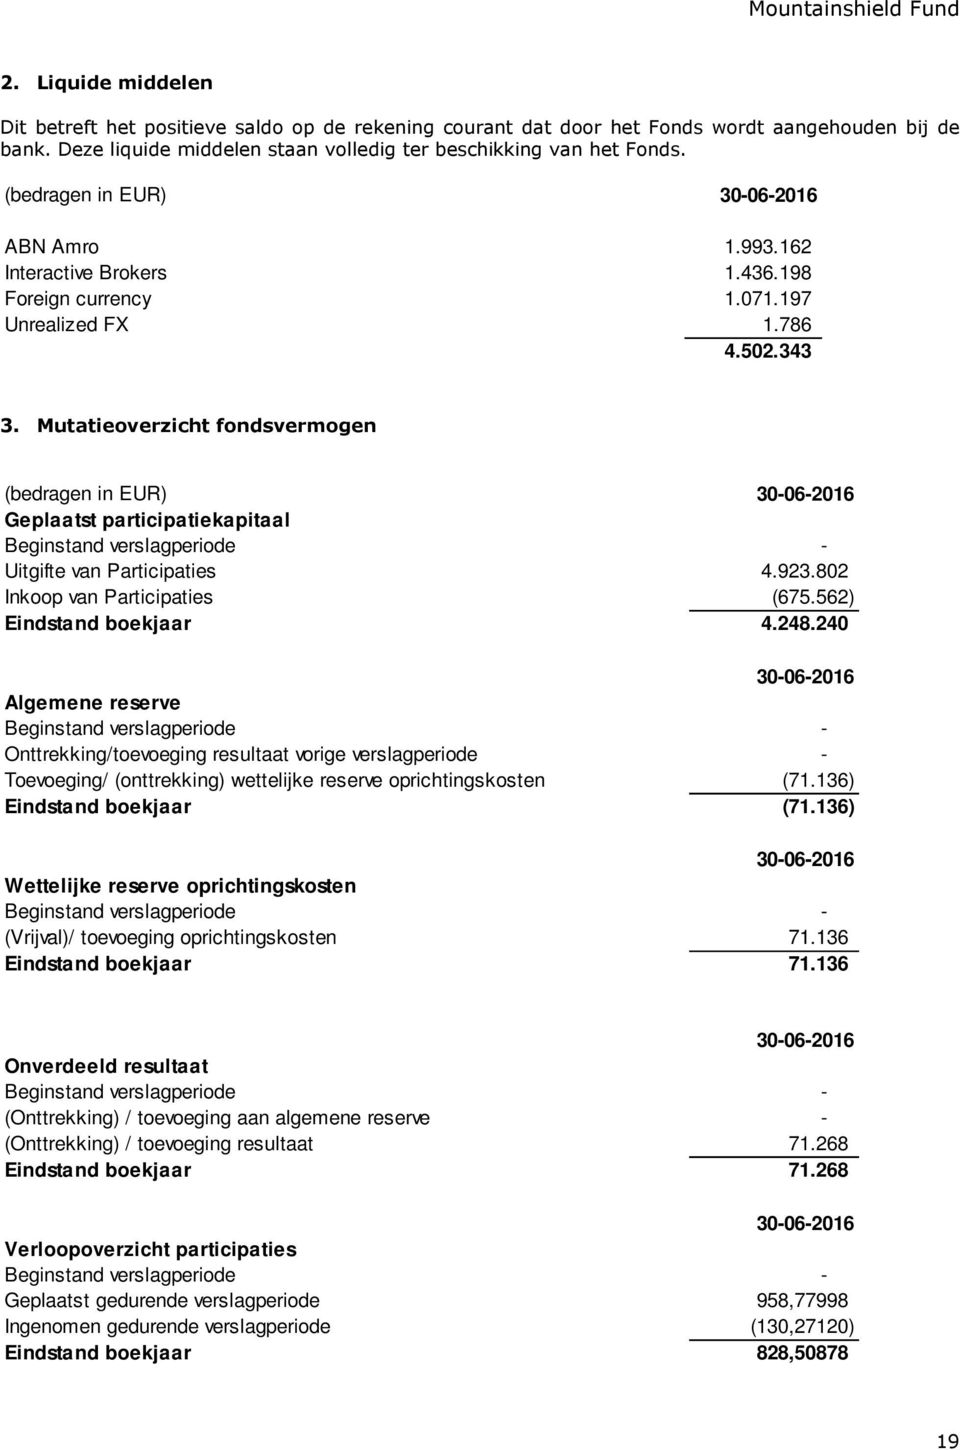 Mutatieoverzicht fondsvermogen (bedragen in EUR) Geplaatst participatiekapitaal Beginstand verslagperiode - Uitgifte van Participaties 4.923.802 Inkoop van Participaties (675.